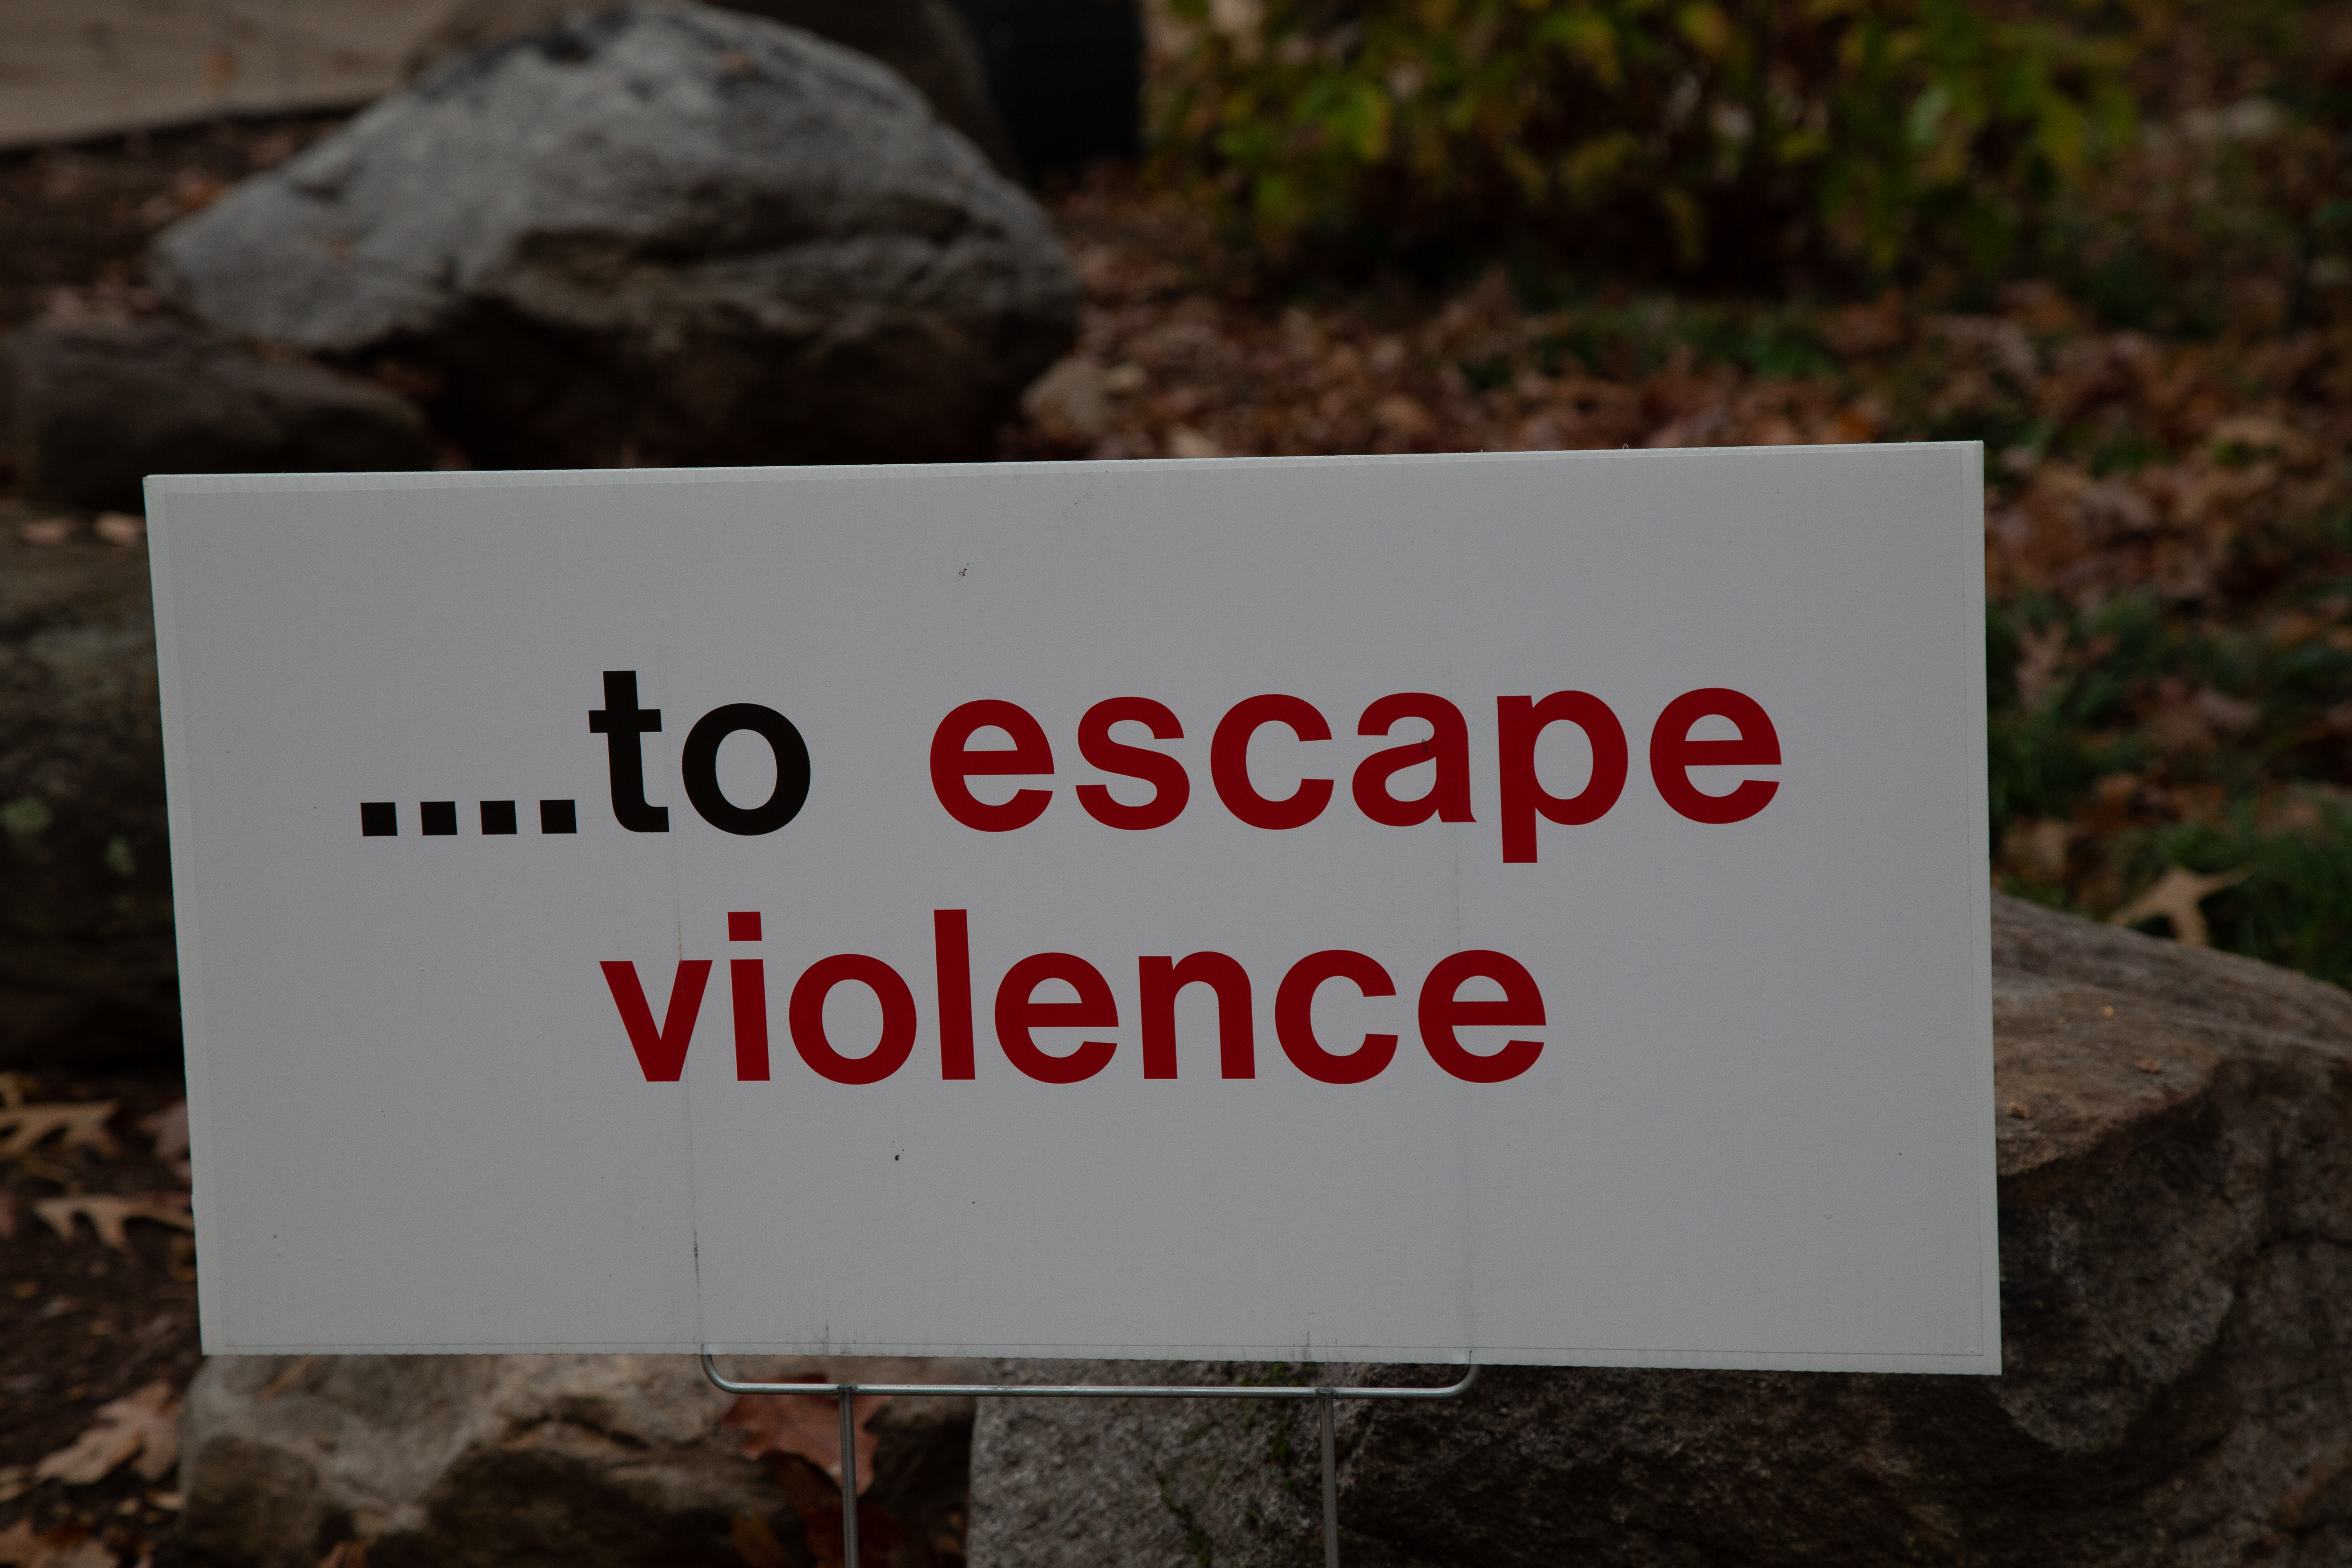 ...to escape violence